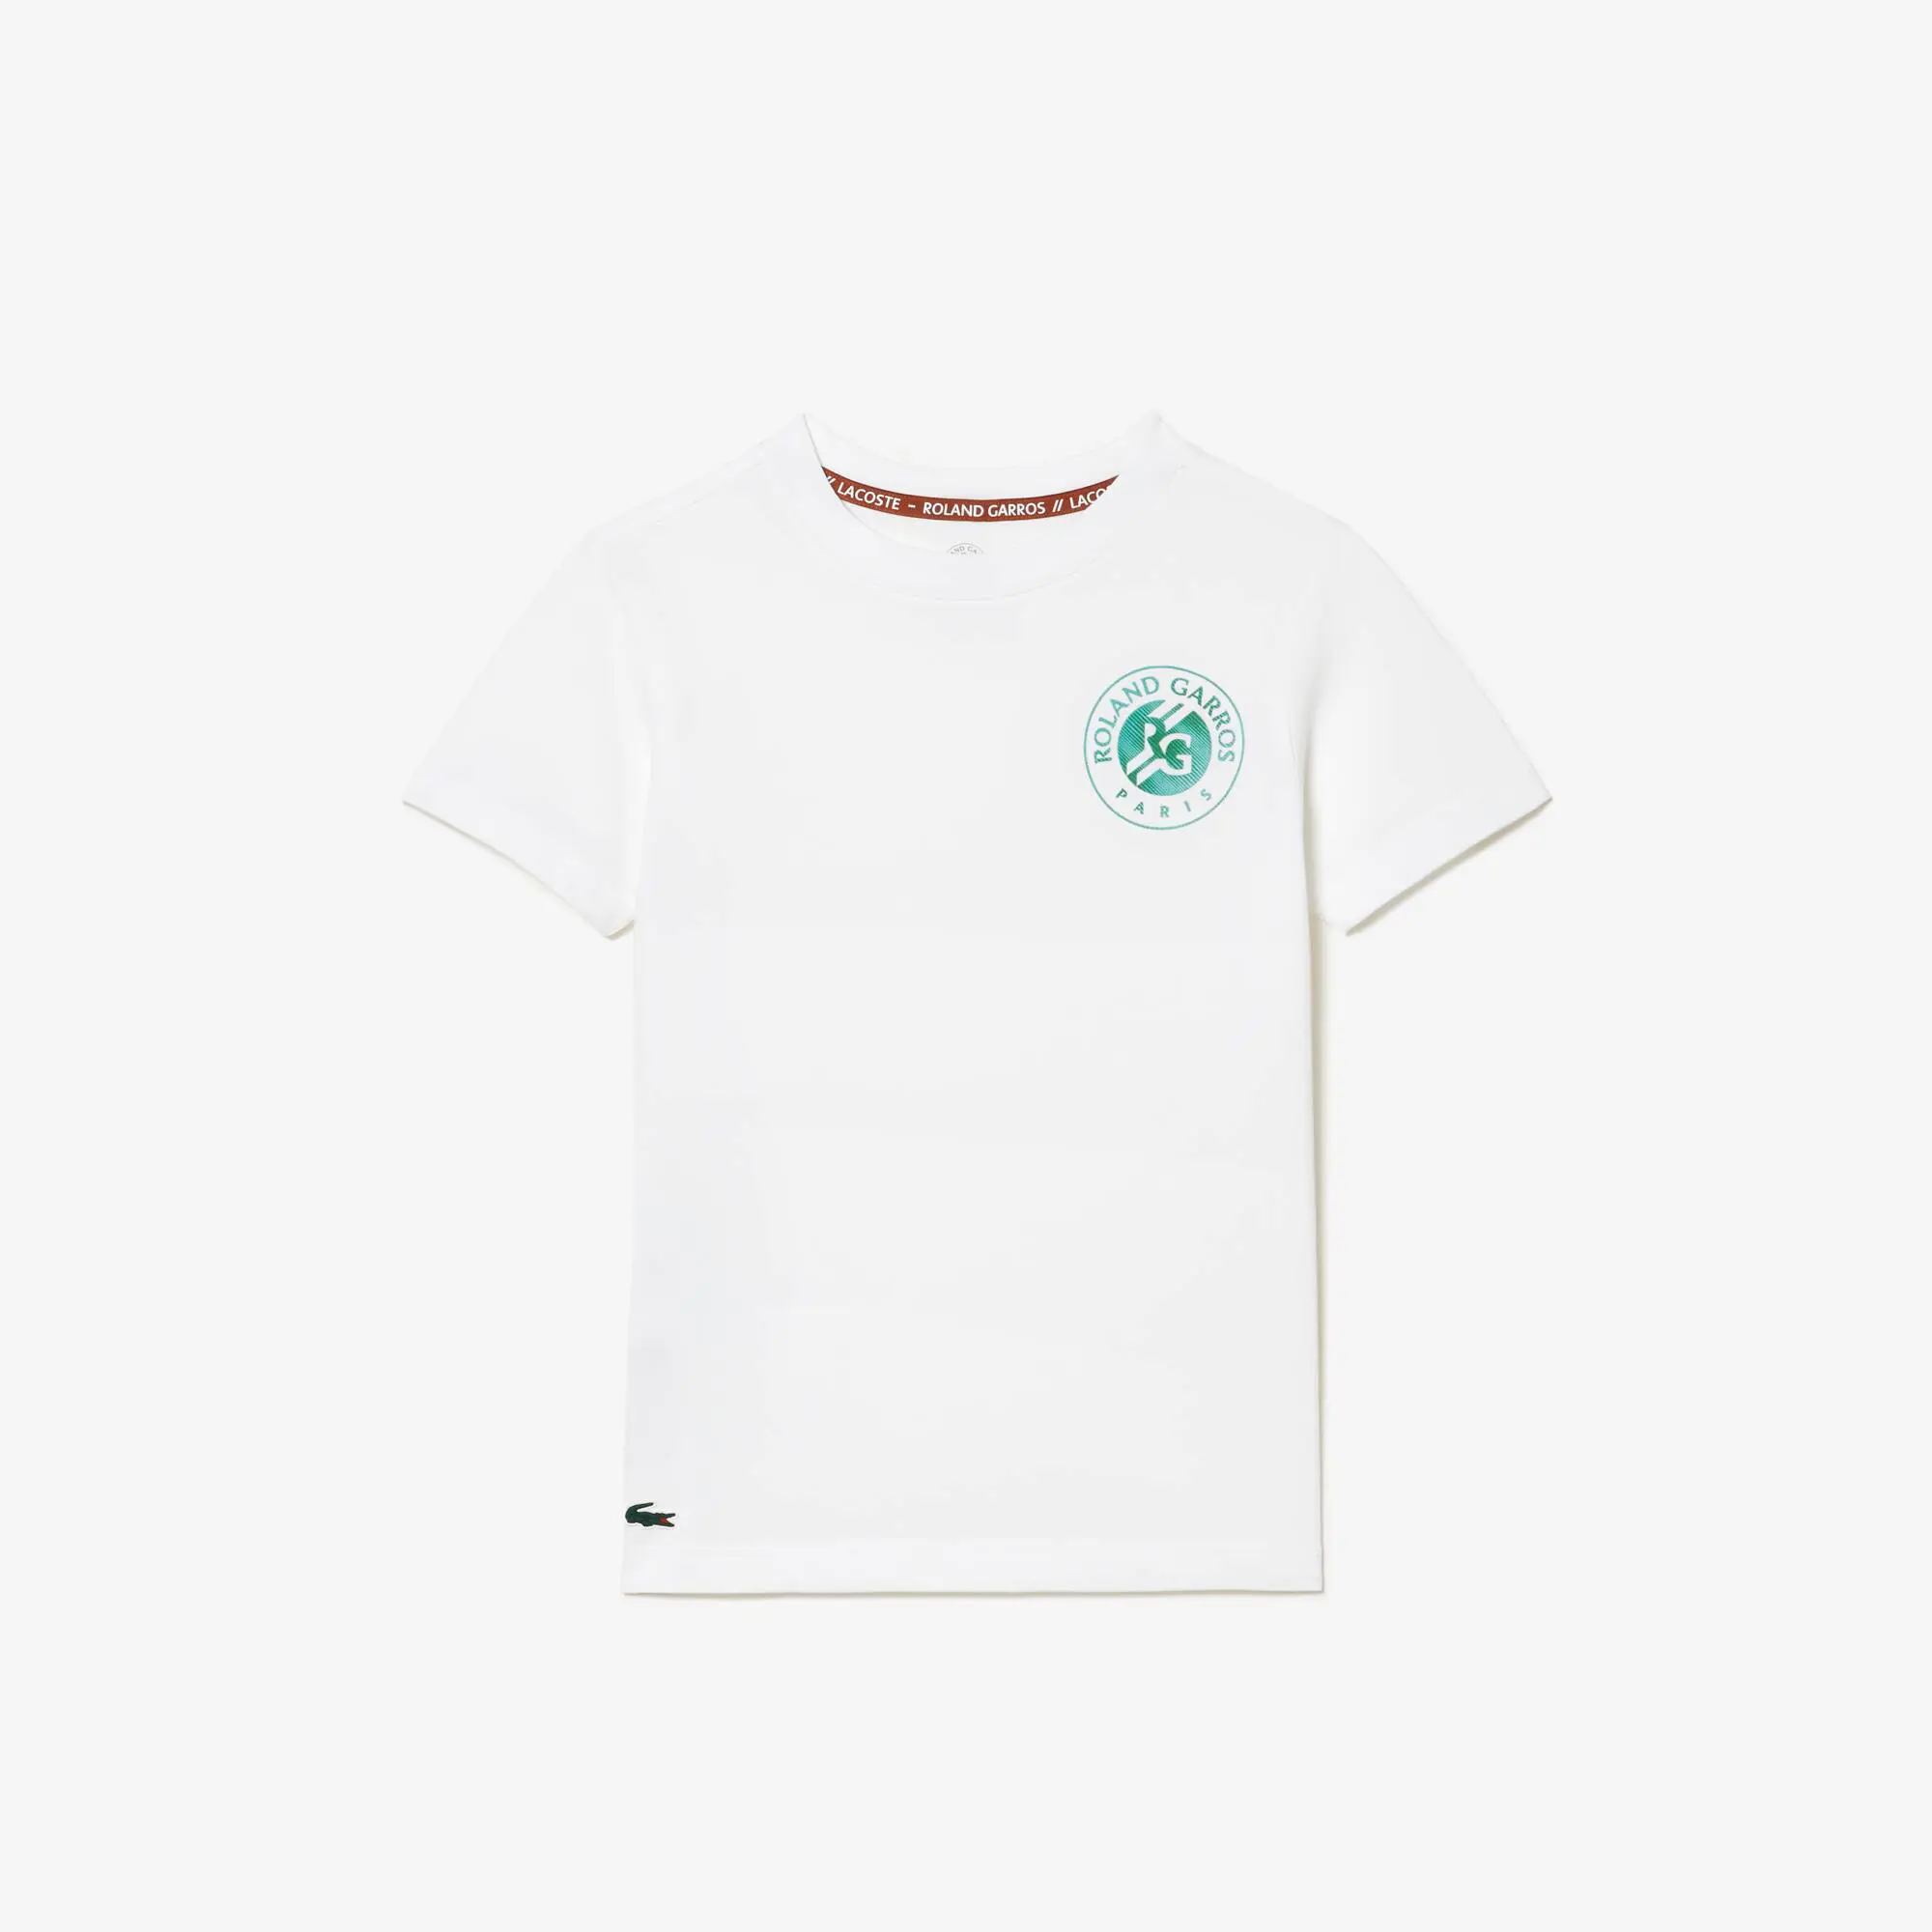 Lacoste Kids’ Lacoste Sport Roland Garros Edition Cotton T-Shirt. 2